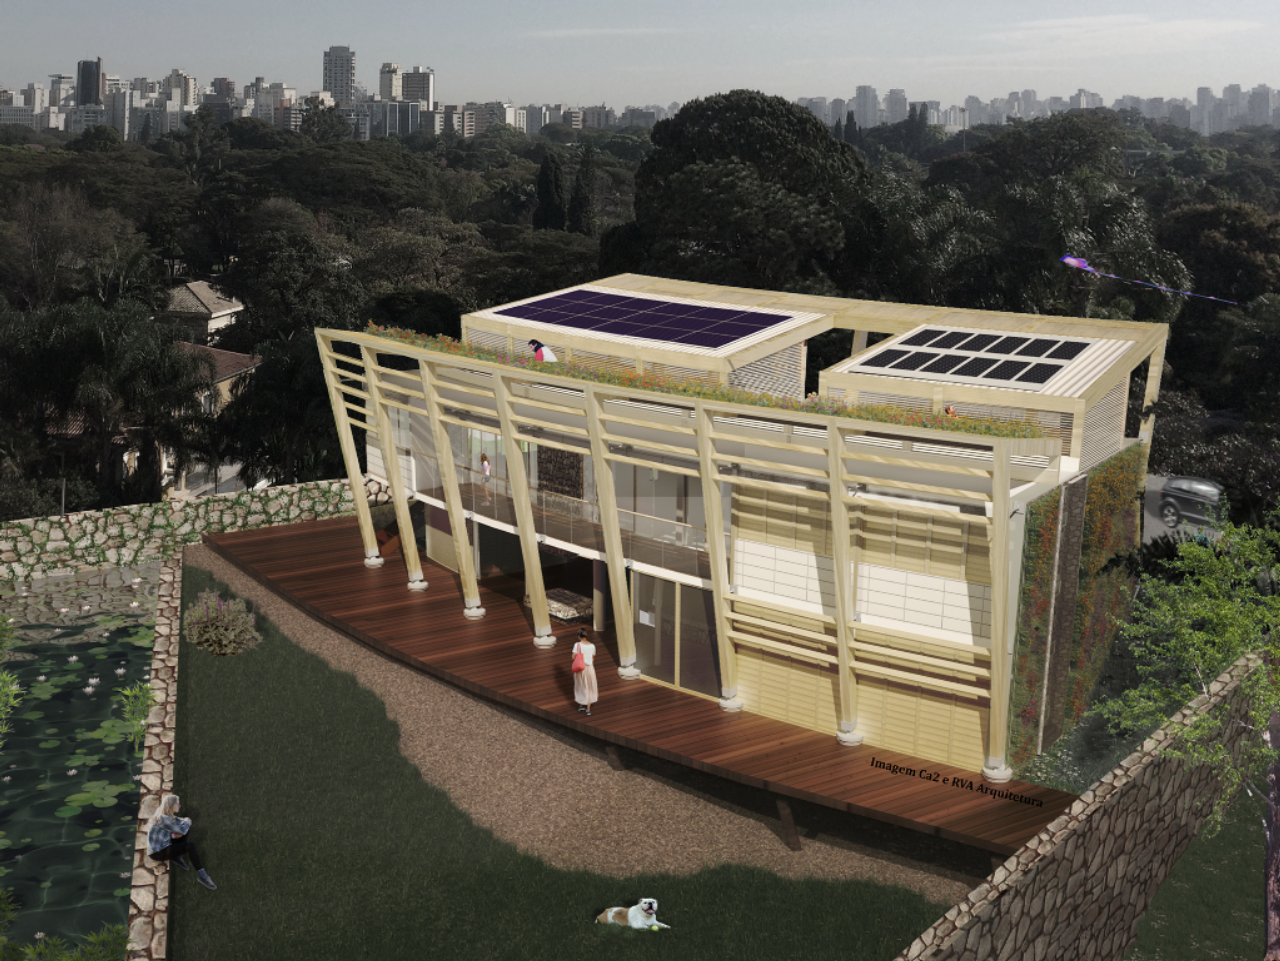 Perspectiva da casa Modulabi que será apresentada durante a 7ª edição da Greenbuilding Brasil .<br>Imagem: Divulgação.